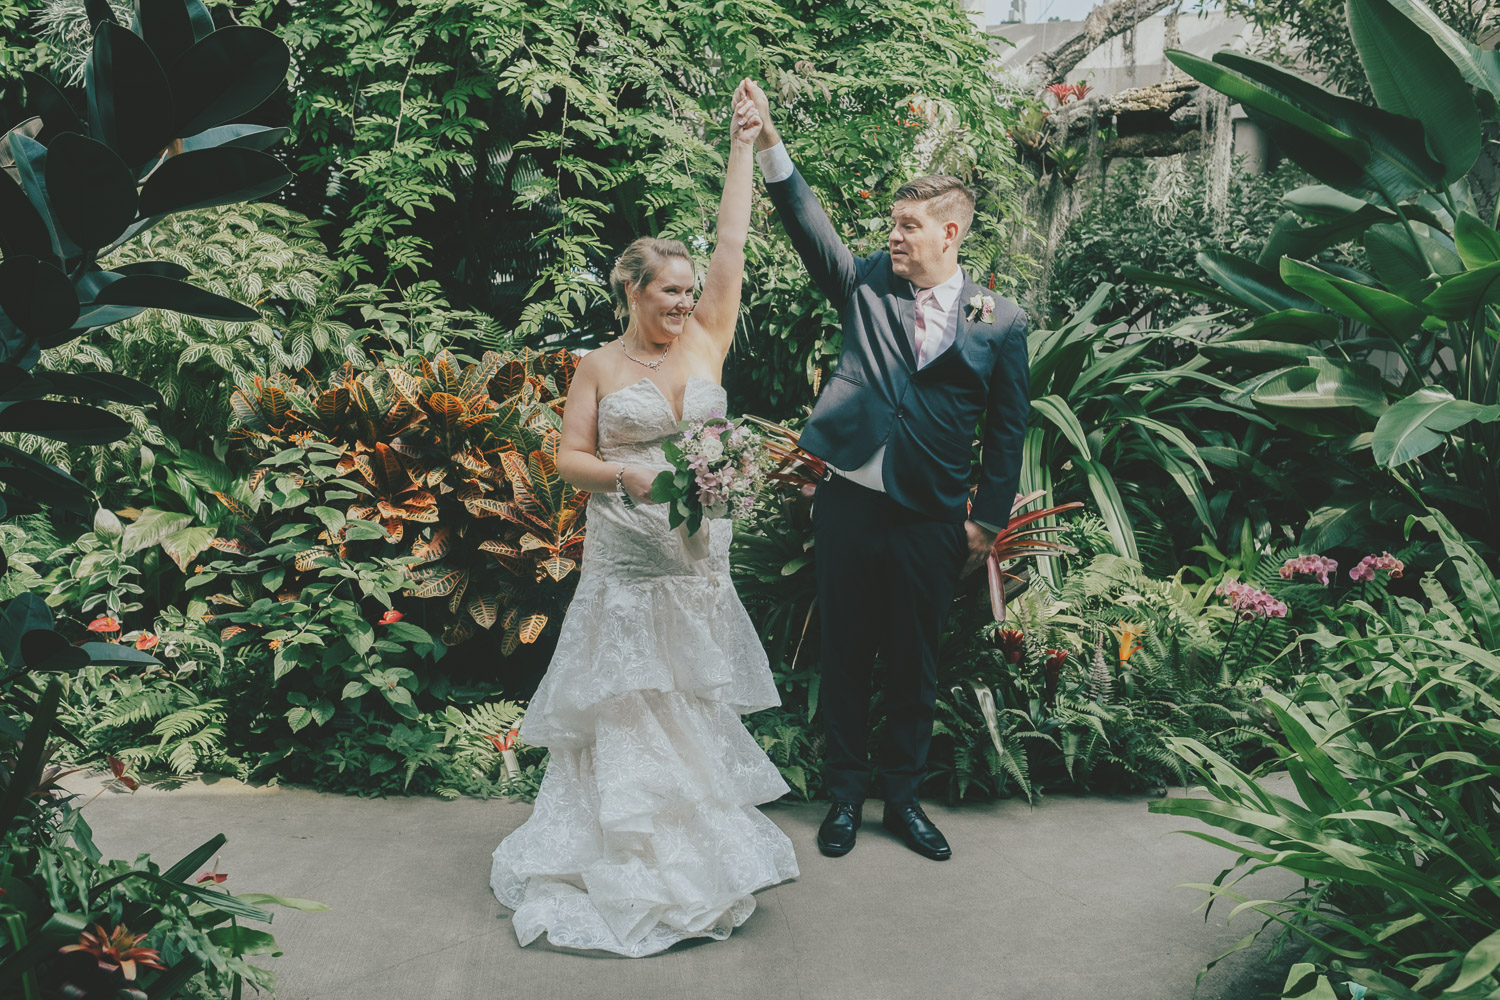 San Antonio Botanical Garden Texas Wedding Elopement Photography